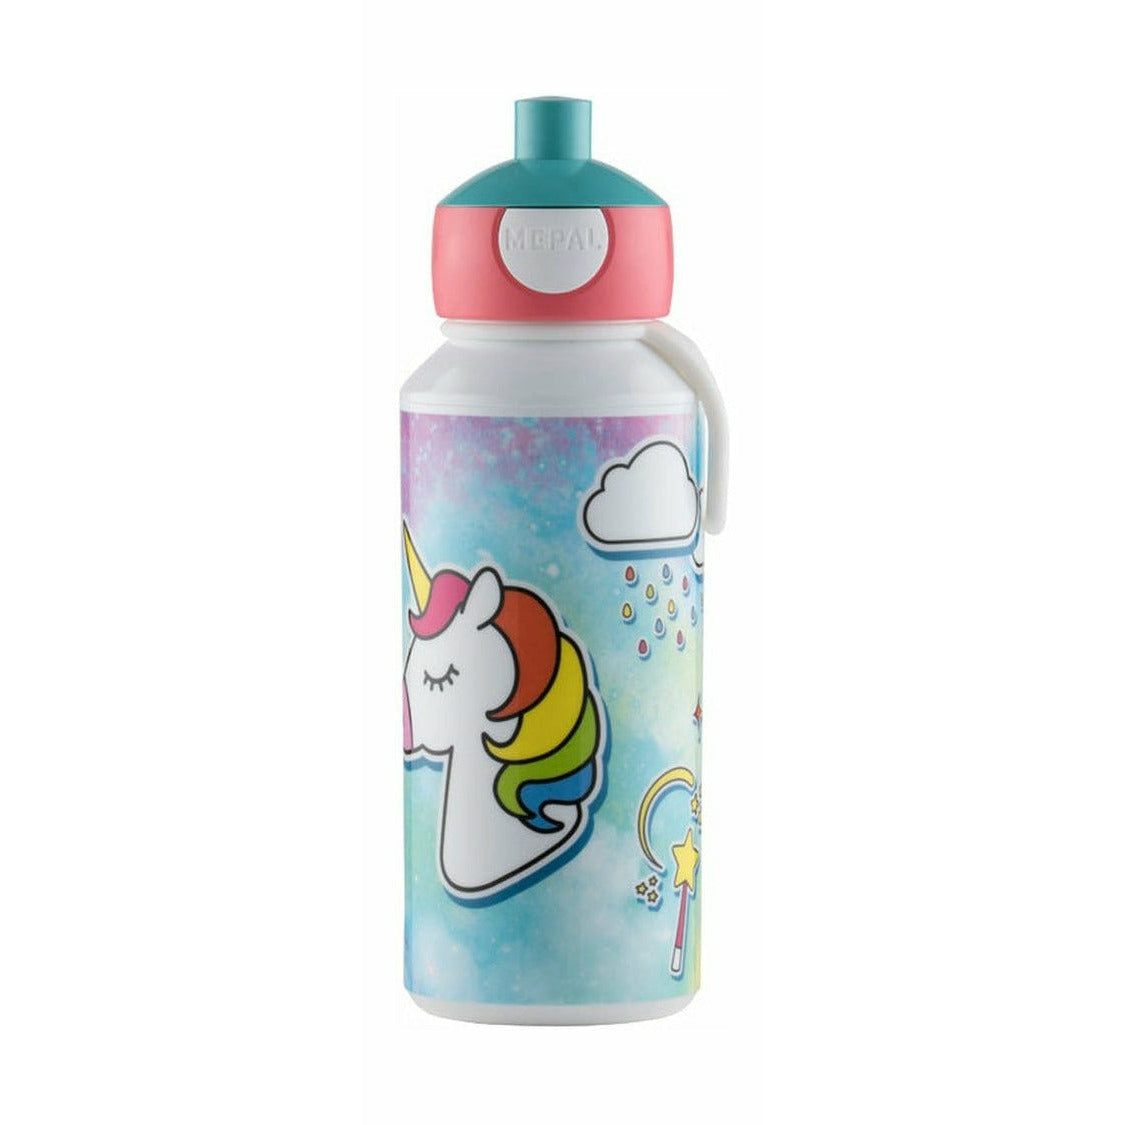 Mepal Pop-up Unicorn Drinking Bottle, 0,4 L